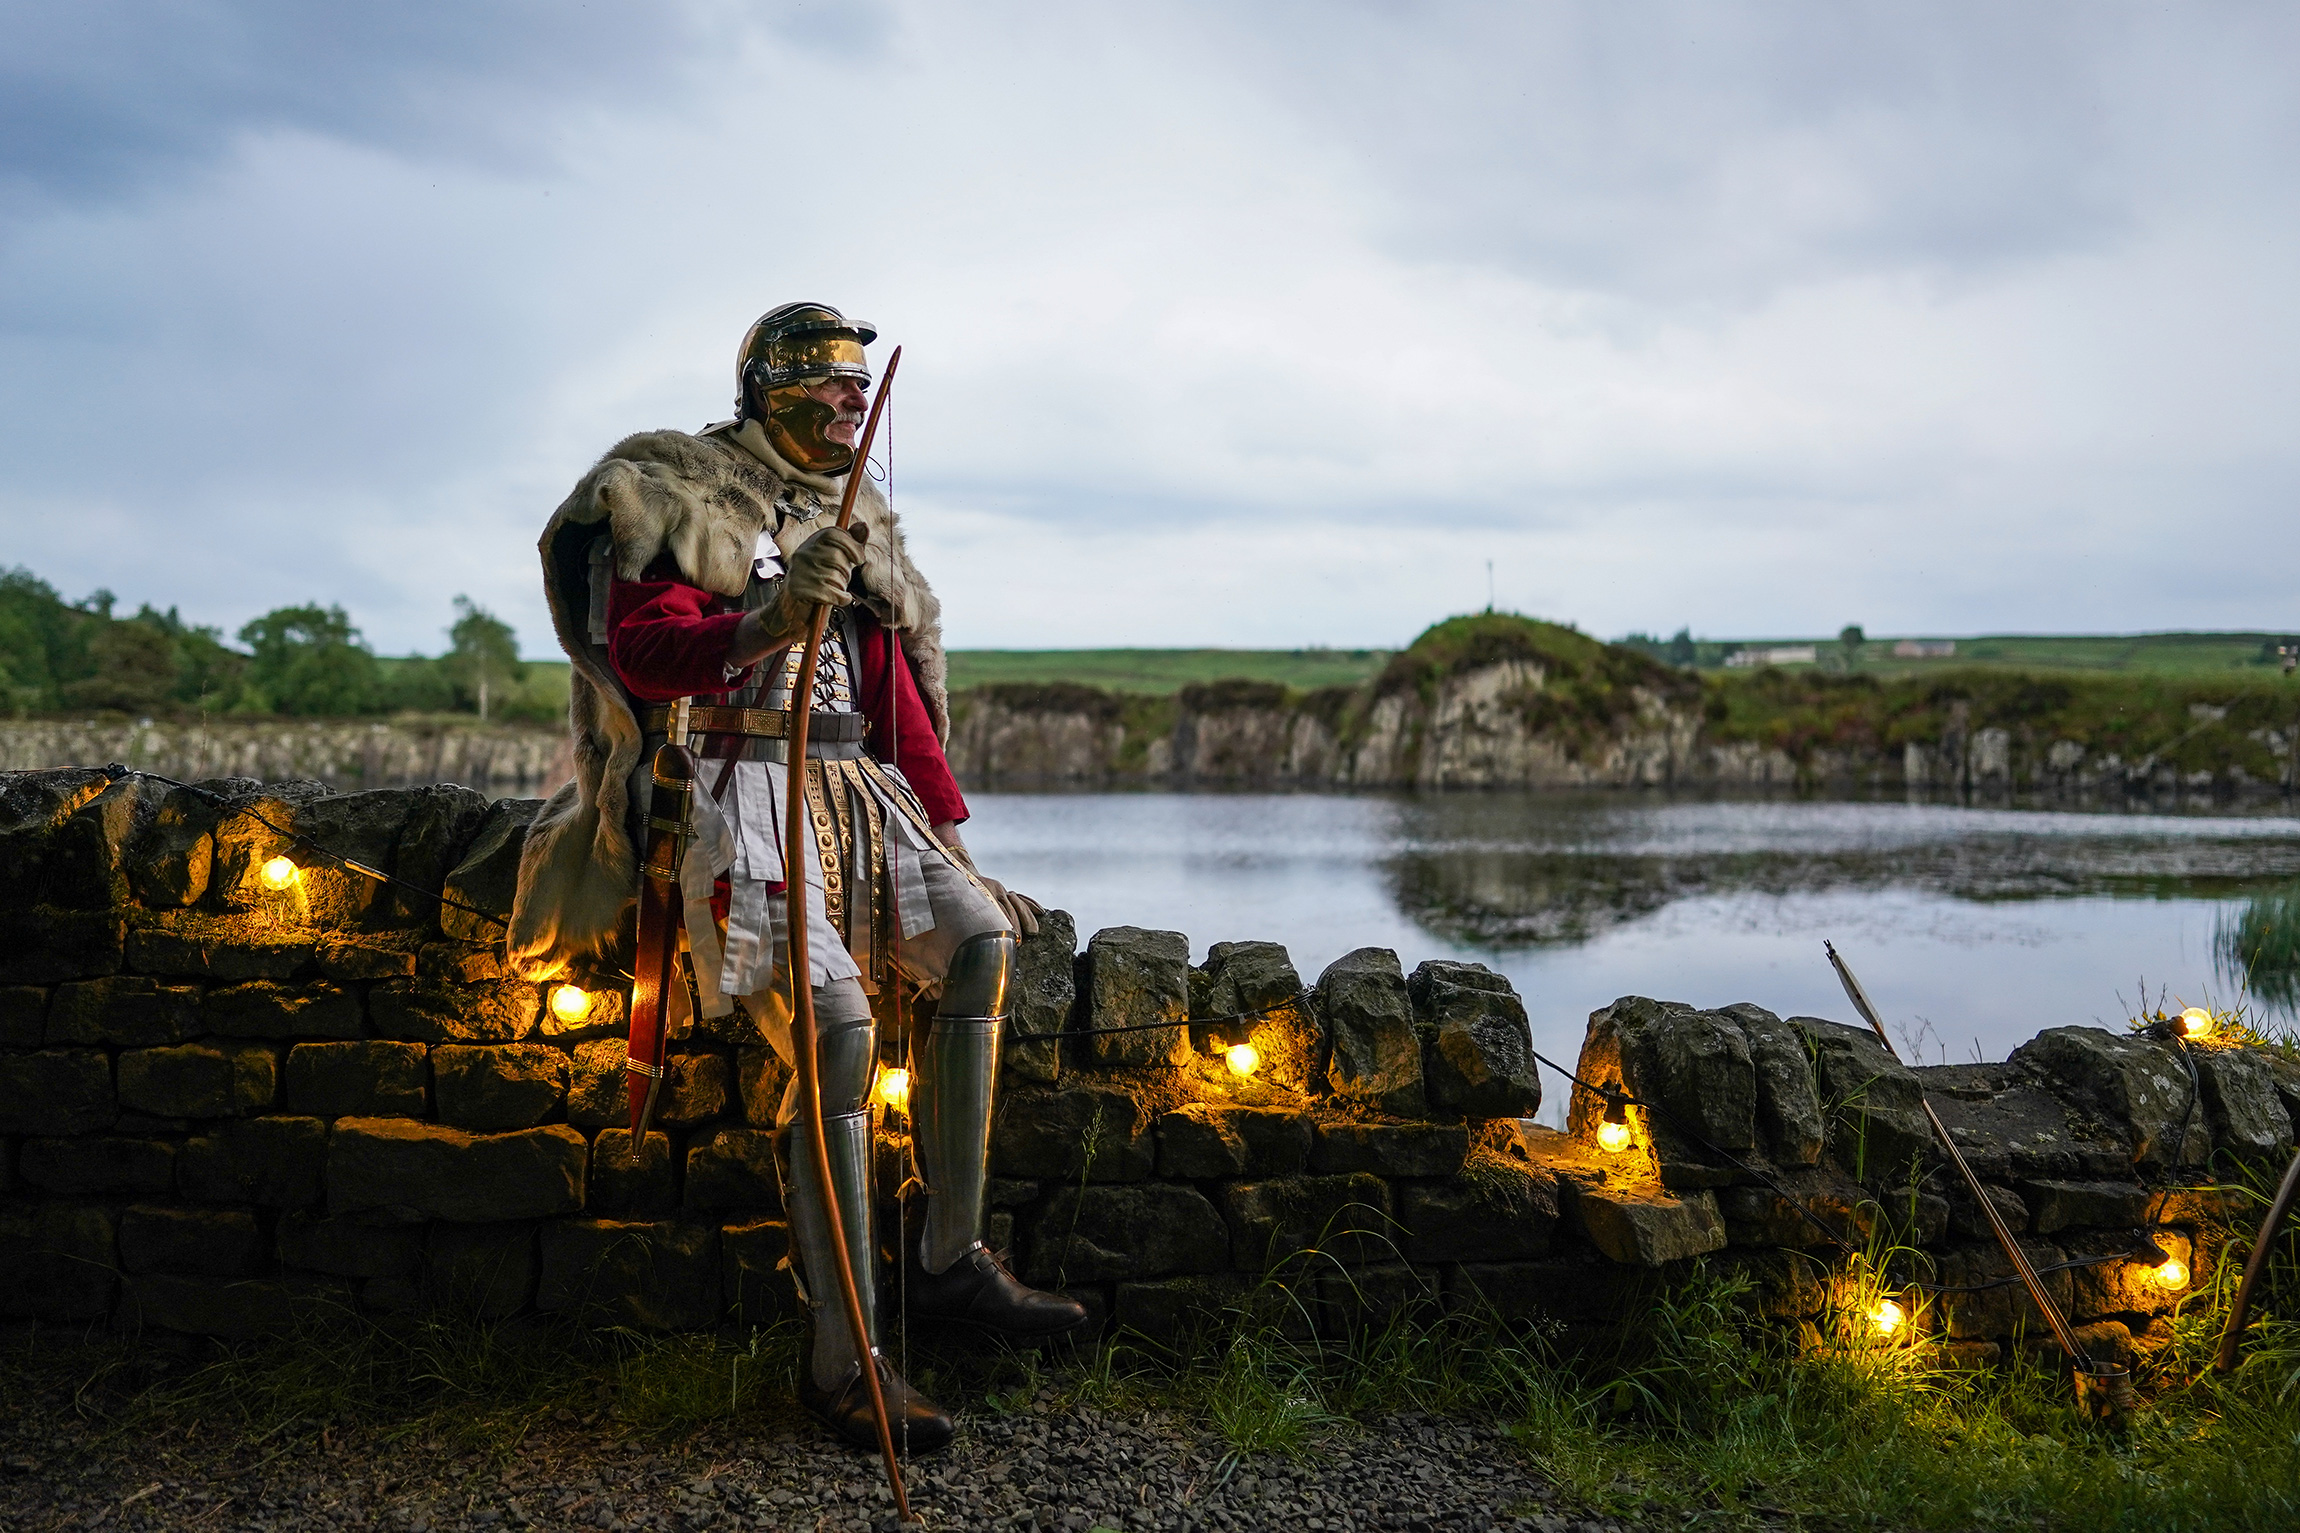 Халтвисл, Англия, 2 июня. Мужчина в костюме римского лучника готовится пустить горящую стрелу, чтобы зажечь плавучий маяк на озере